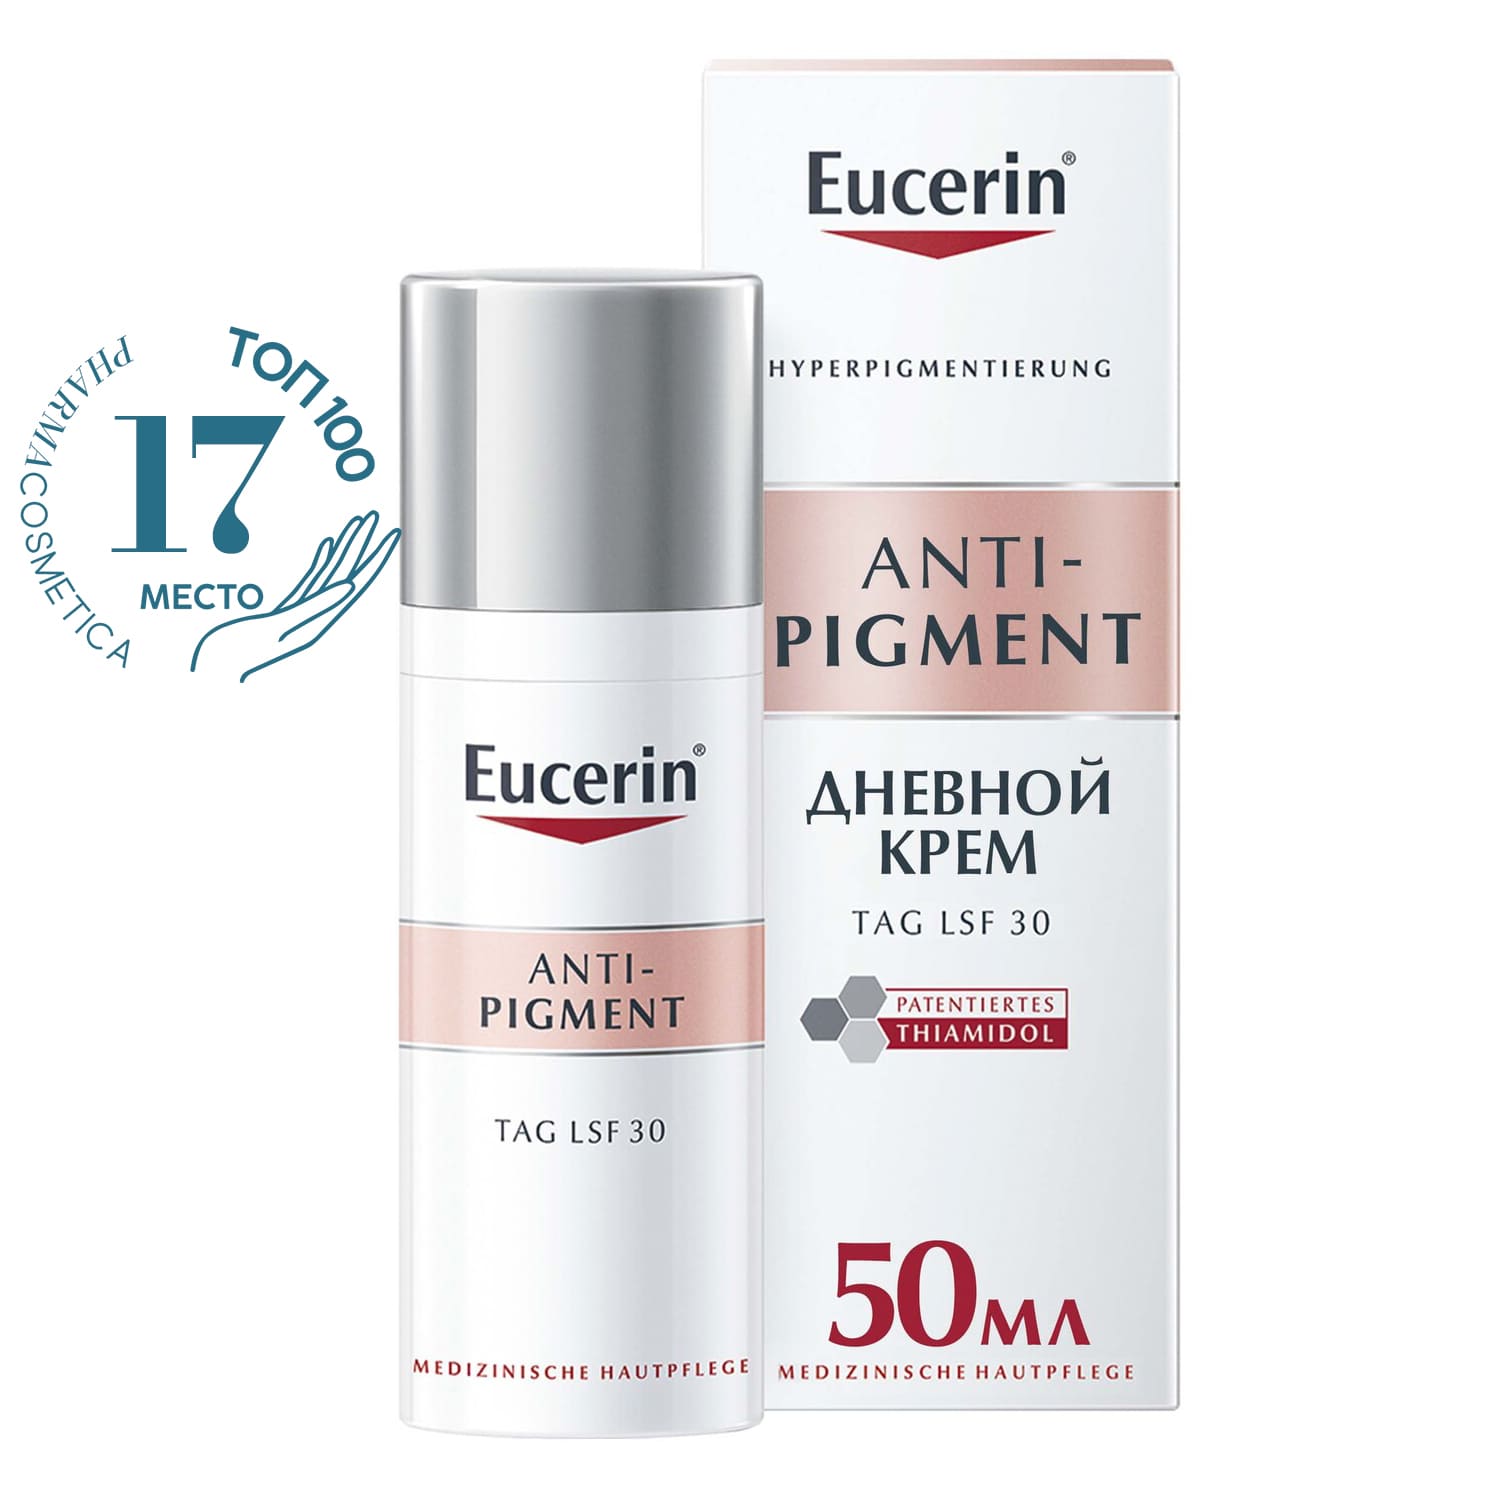 Eucerin Дневной крем против пигментации SPF 30, 50 мл (Eucerin, Anti-Pigment)